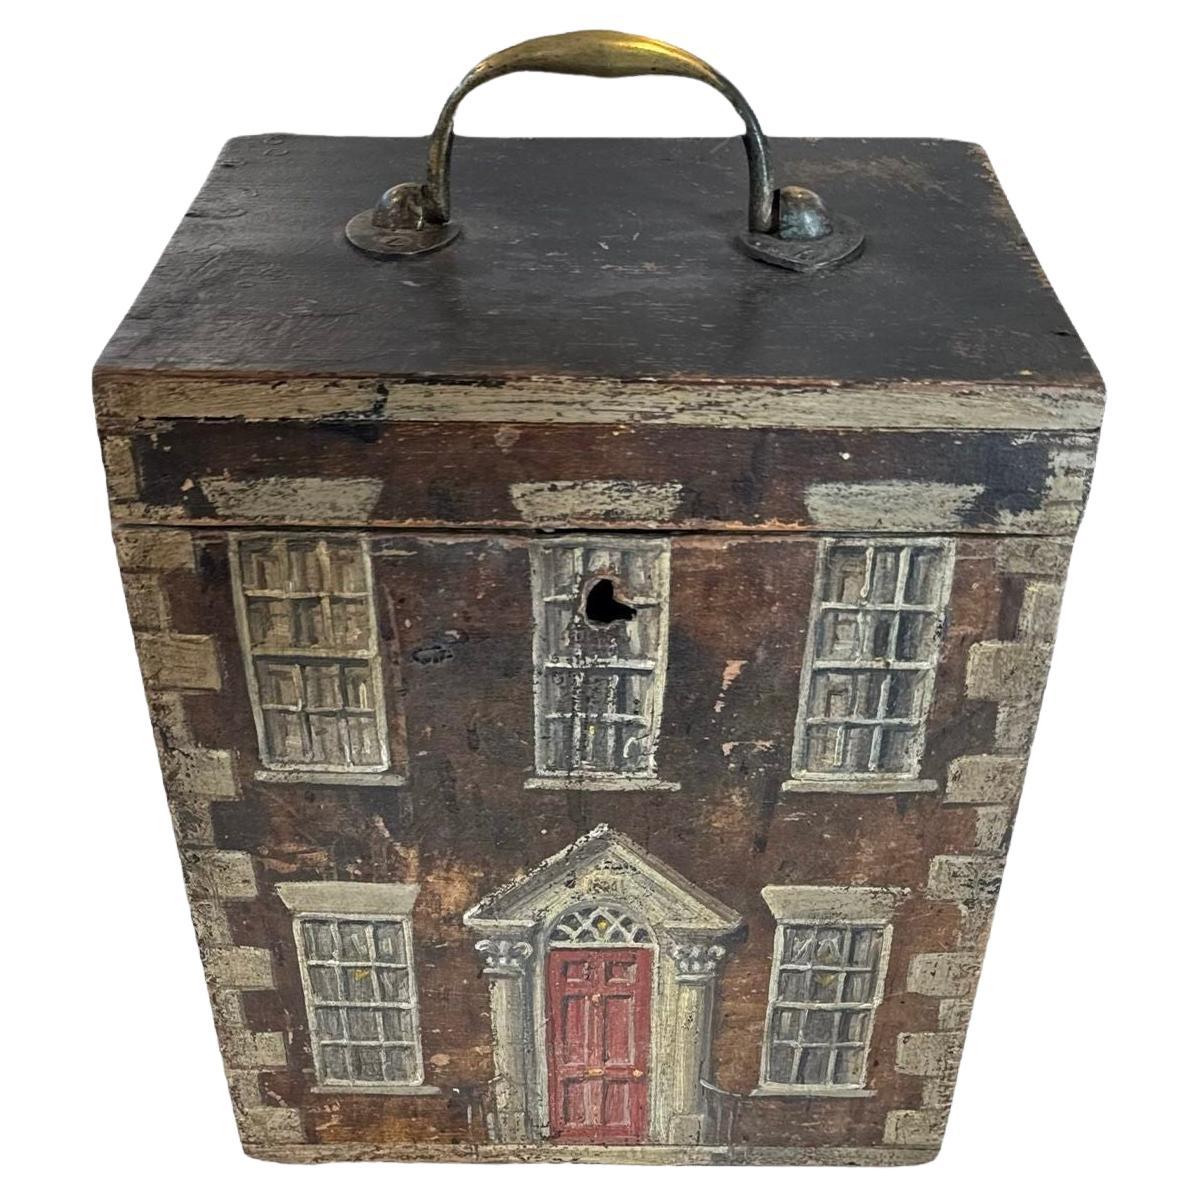 Eine englische bemalte Schachtel, die einem frühen georgianischen Haus ähnelt, 19. Jahrhundert